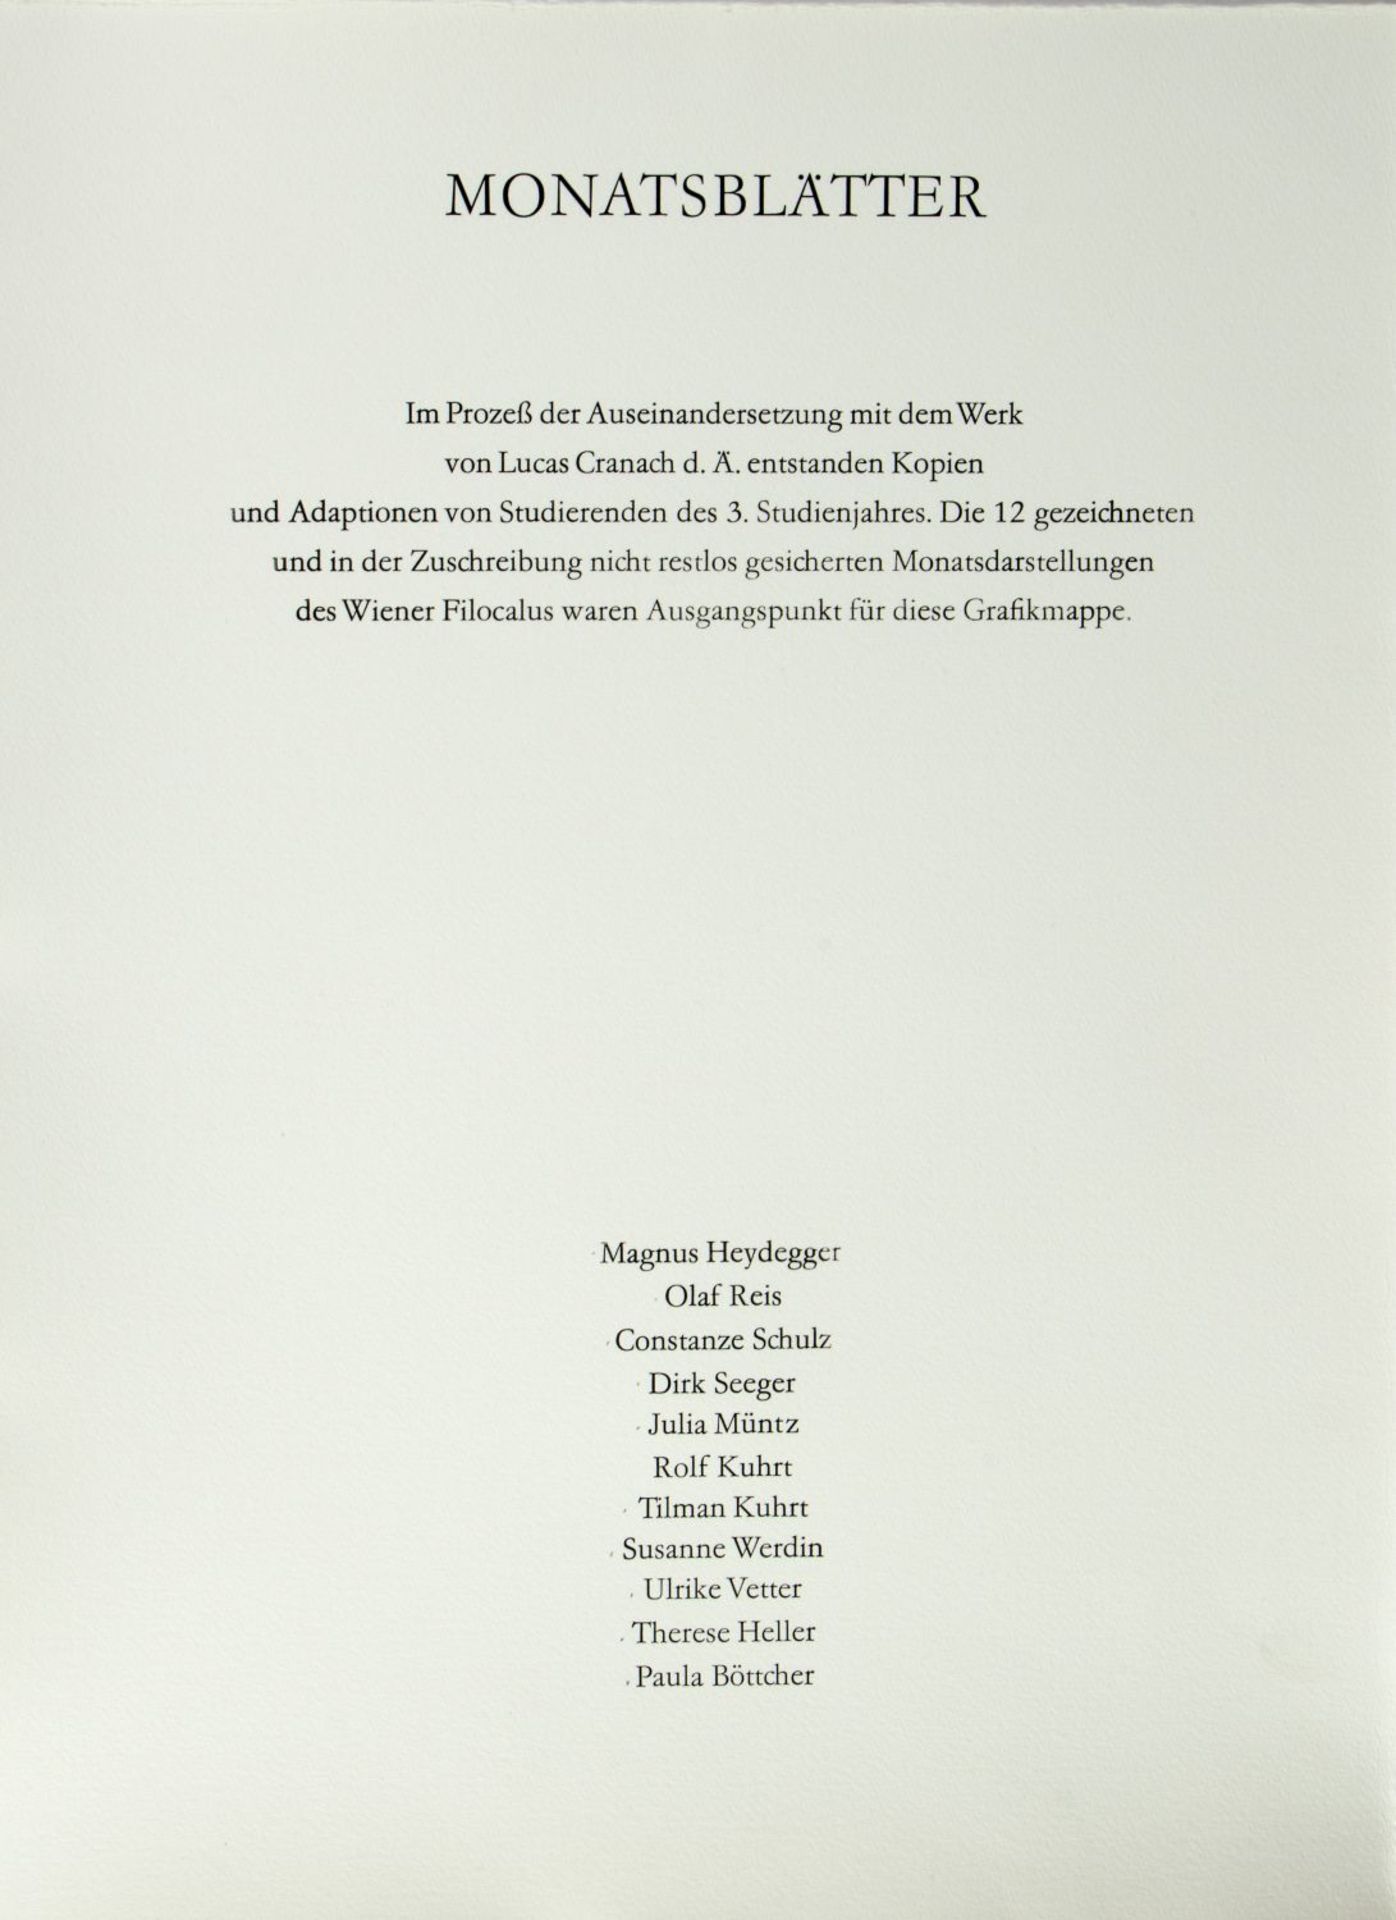 Heydegger, M. Böttcher, P. Werdin, S. u.a.Monatsblätter. Mappe mit 12 Bll. versch. Techn. Sign. bzw. - Bild 2 aus 5